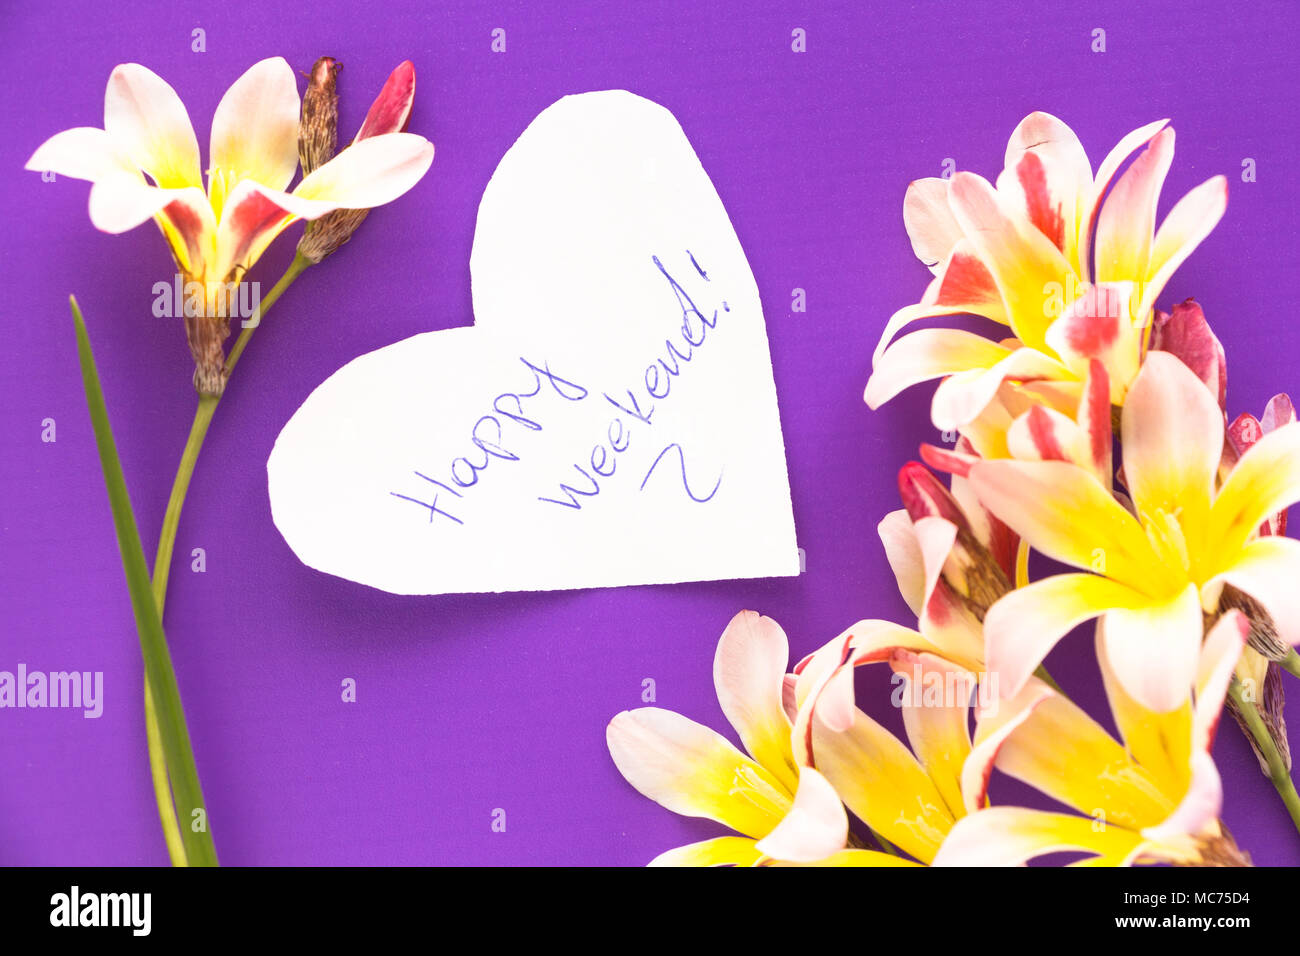 Hinweis in der Form des Herzens mit glücklichen Worte "Wochenende!" mit Blumen auf lila Untergrund. Stockfoto